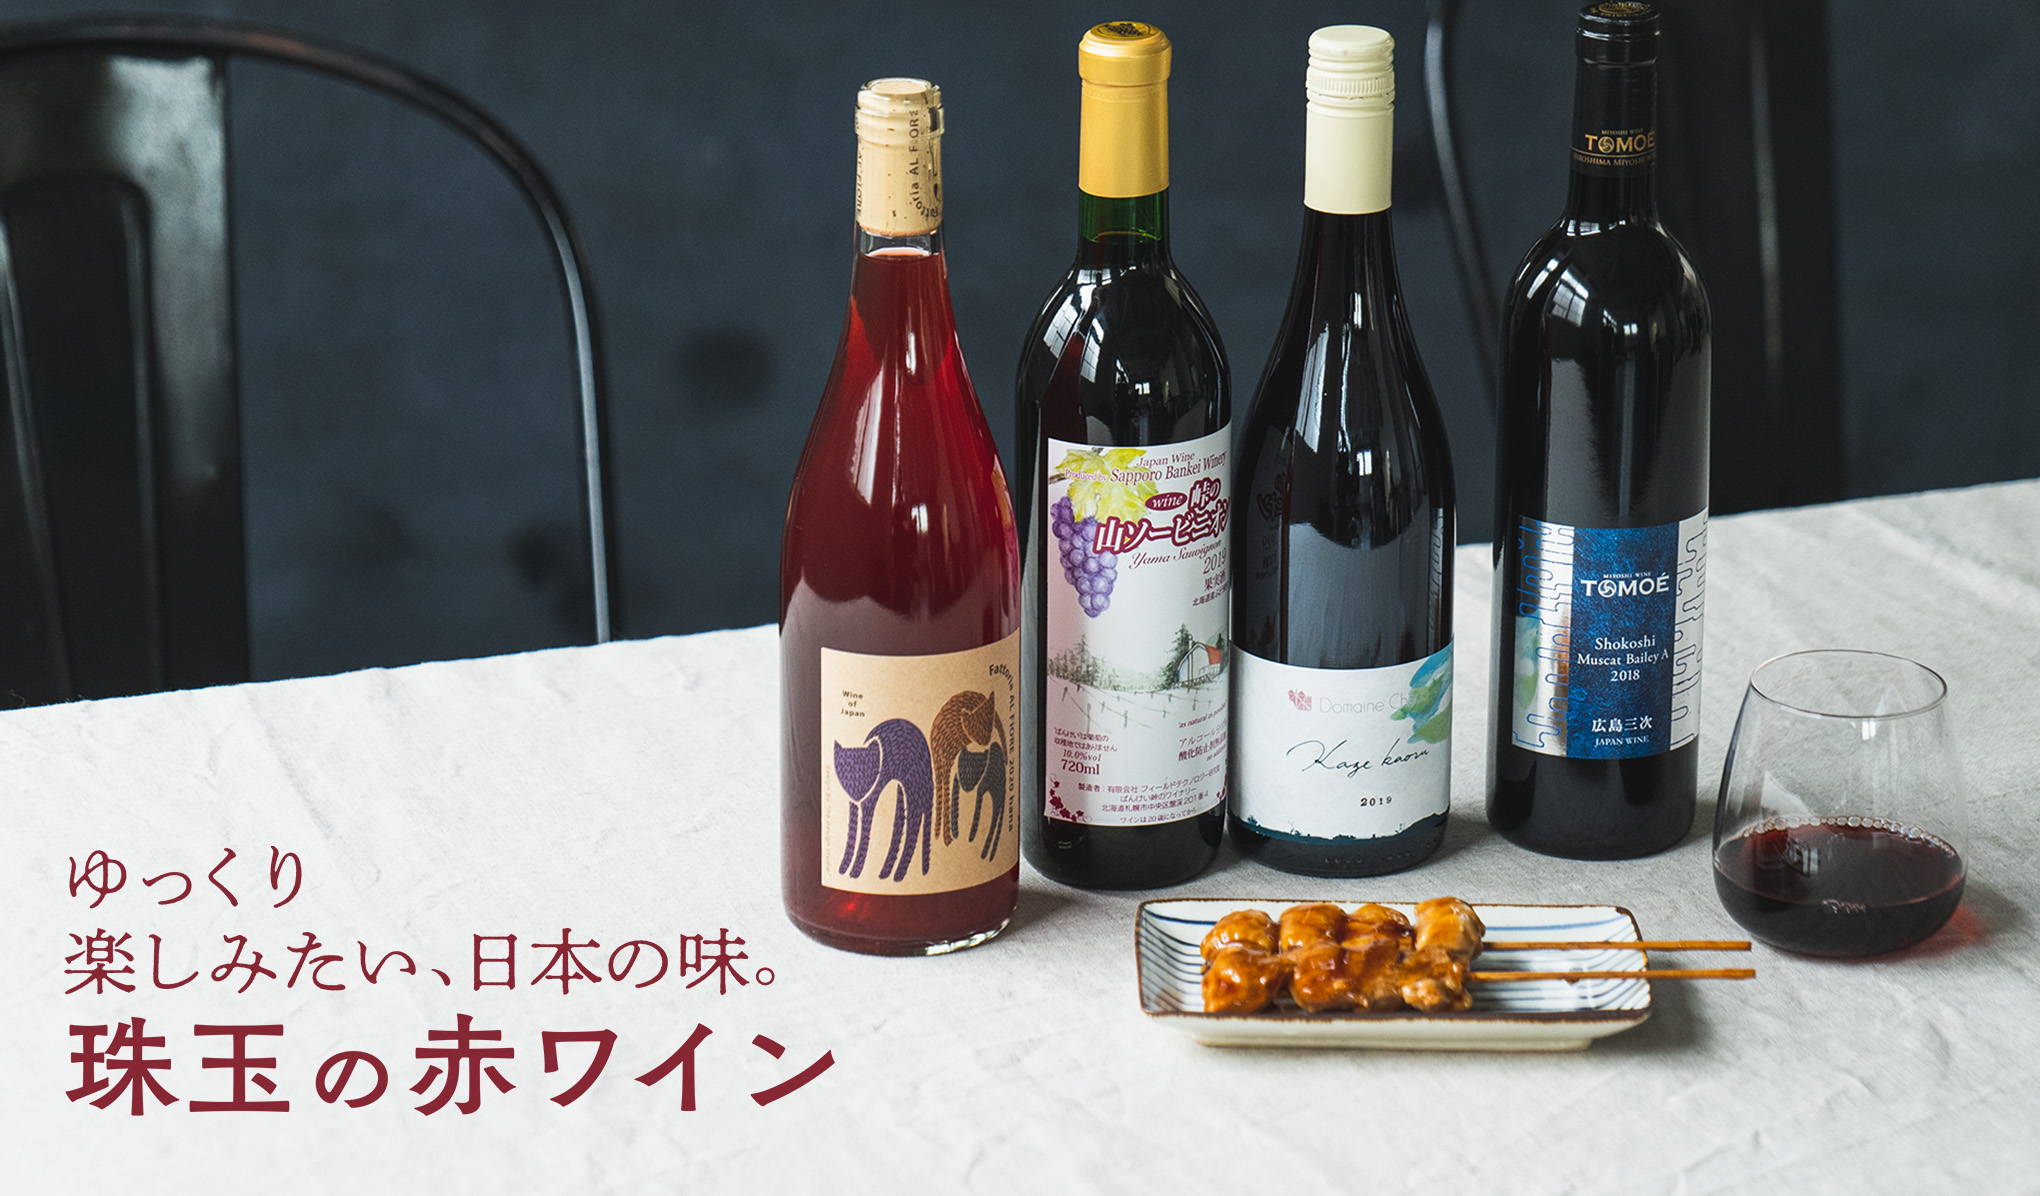 ゆっくり楽しみたい、日本の味。珠玉の赤ワイン